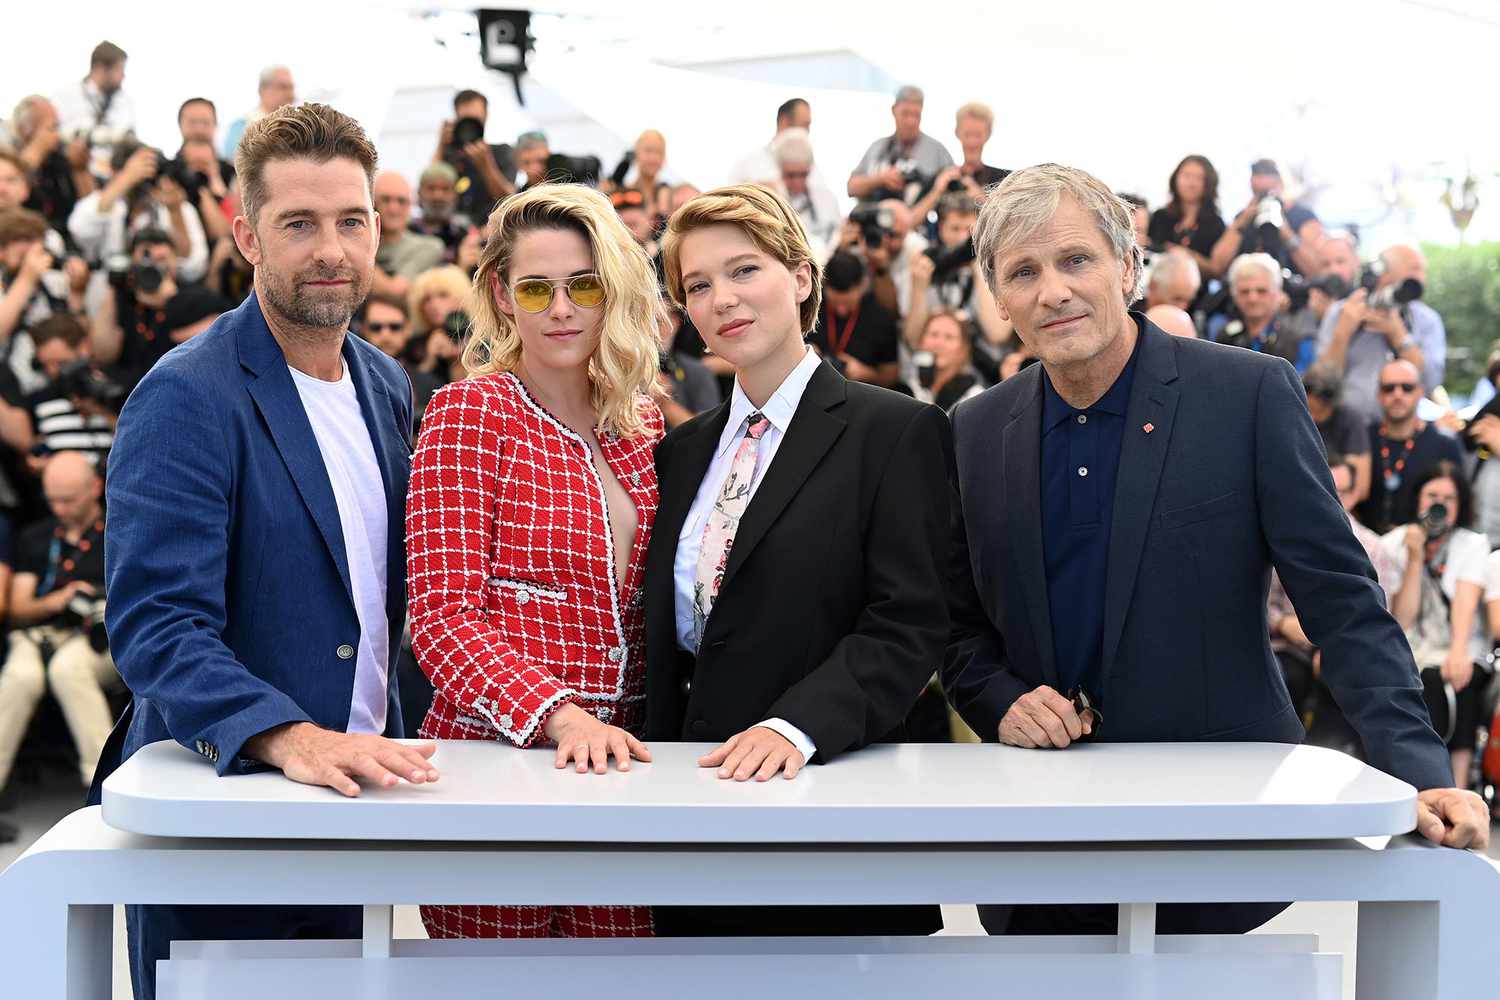 Cannes Film Festival 2022 Scott Speedman, Kristen Stewart, Lea Seydoux and Viggo Mortensen